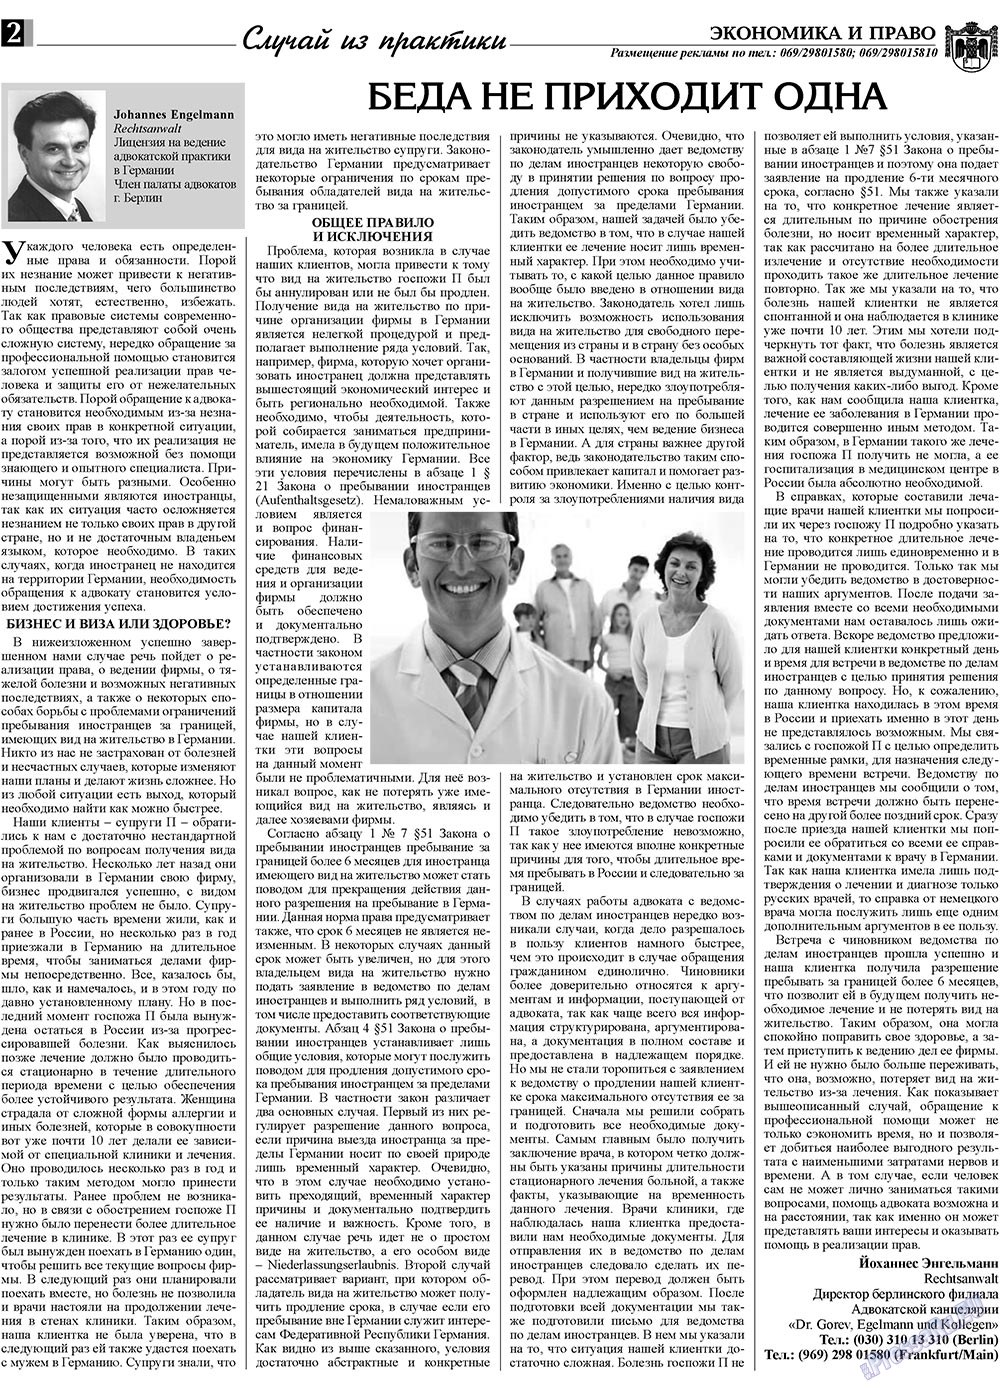 Экономика и право, газета. 2009 №3 стр.2